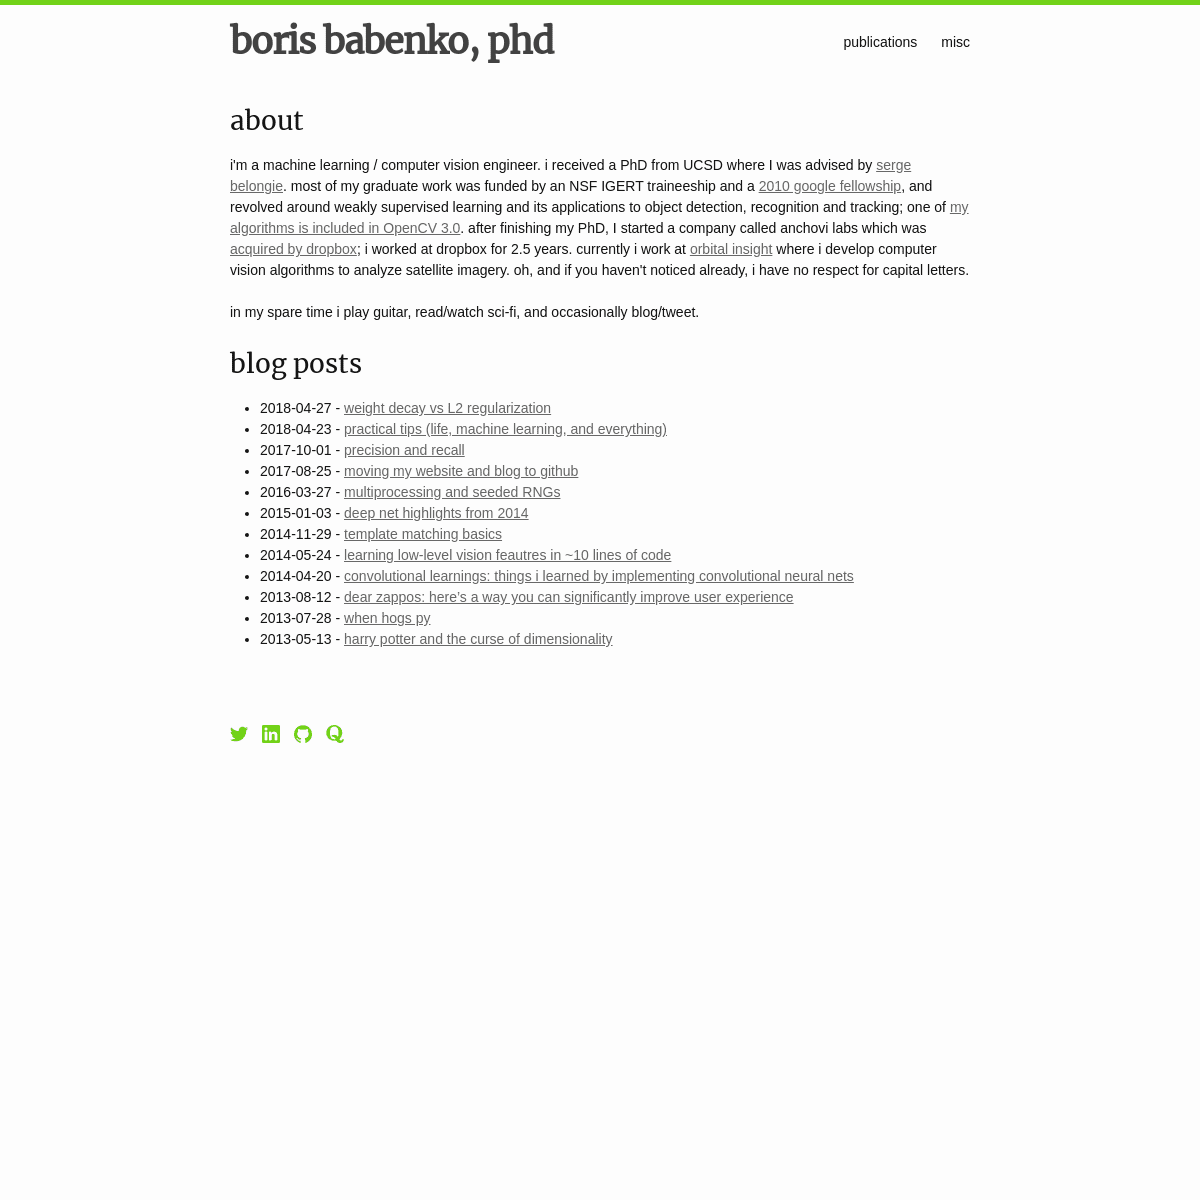 A complete backup of bbabenko.github.io